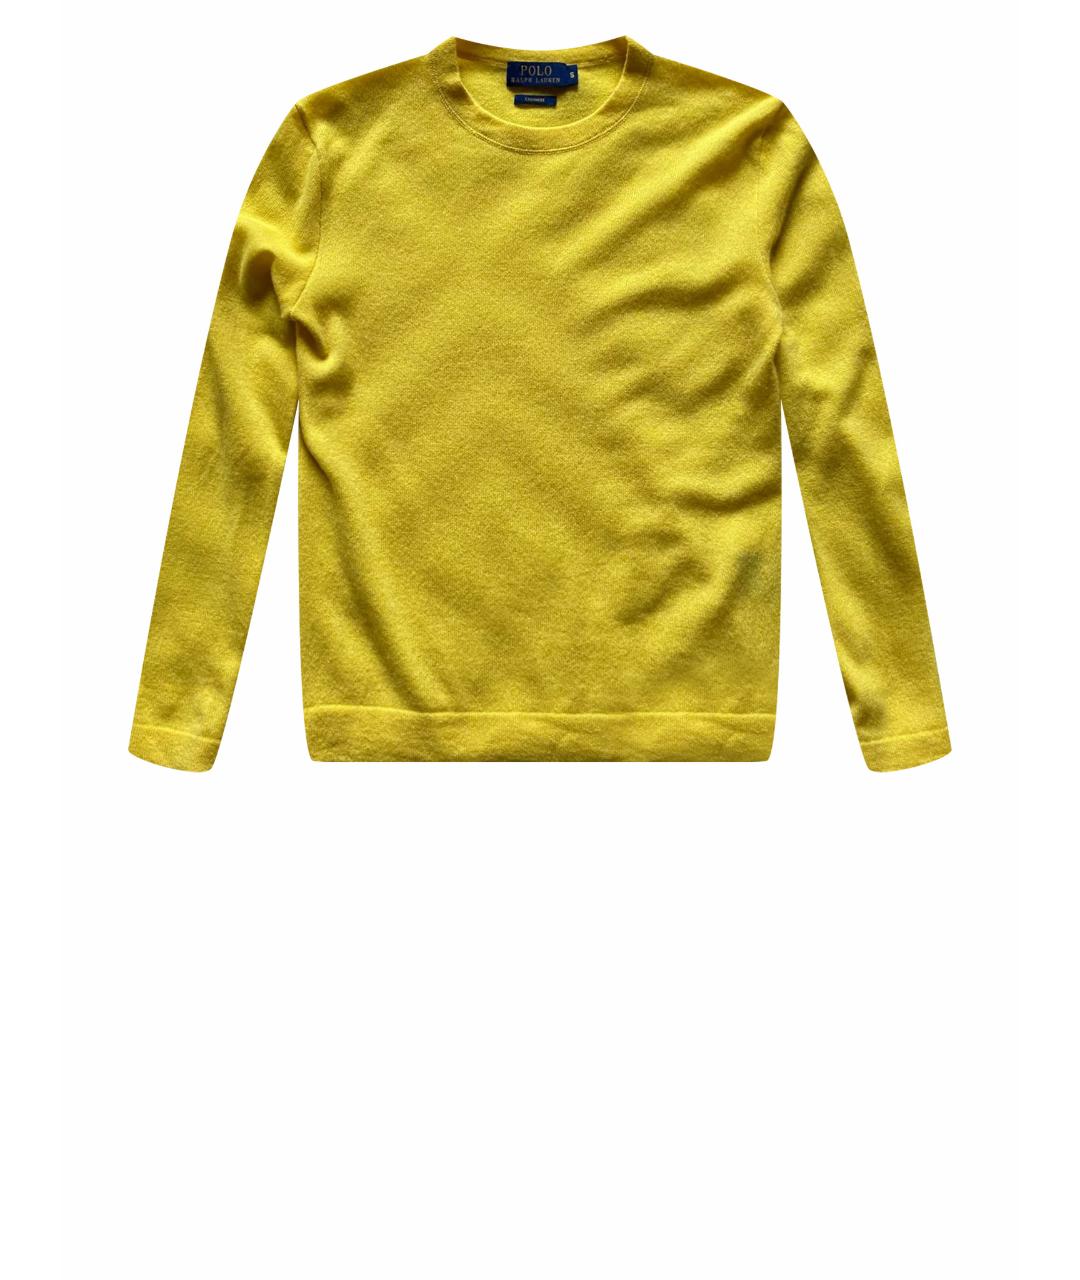 POLO RALPH LAUREN Желтый кашемировый джемпер / свитер, фото 1